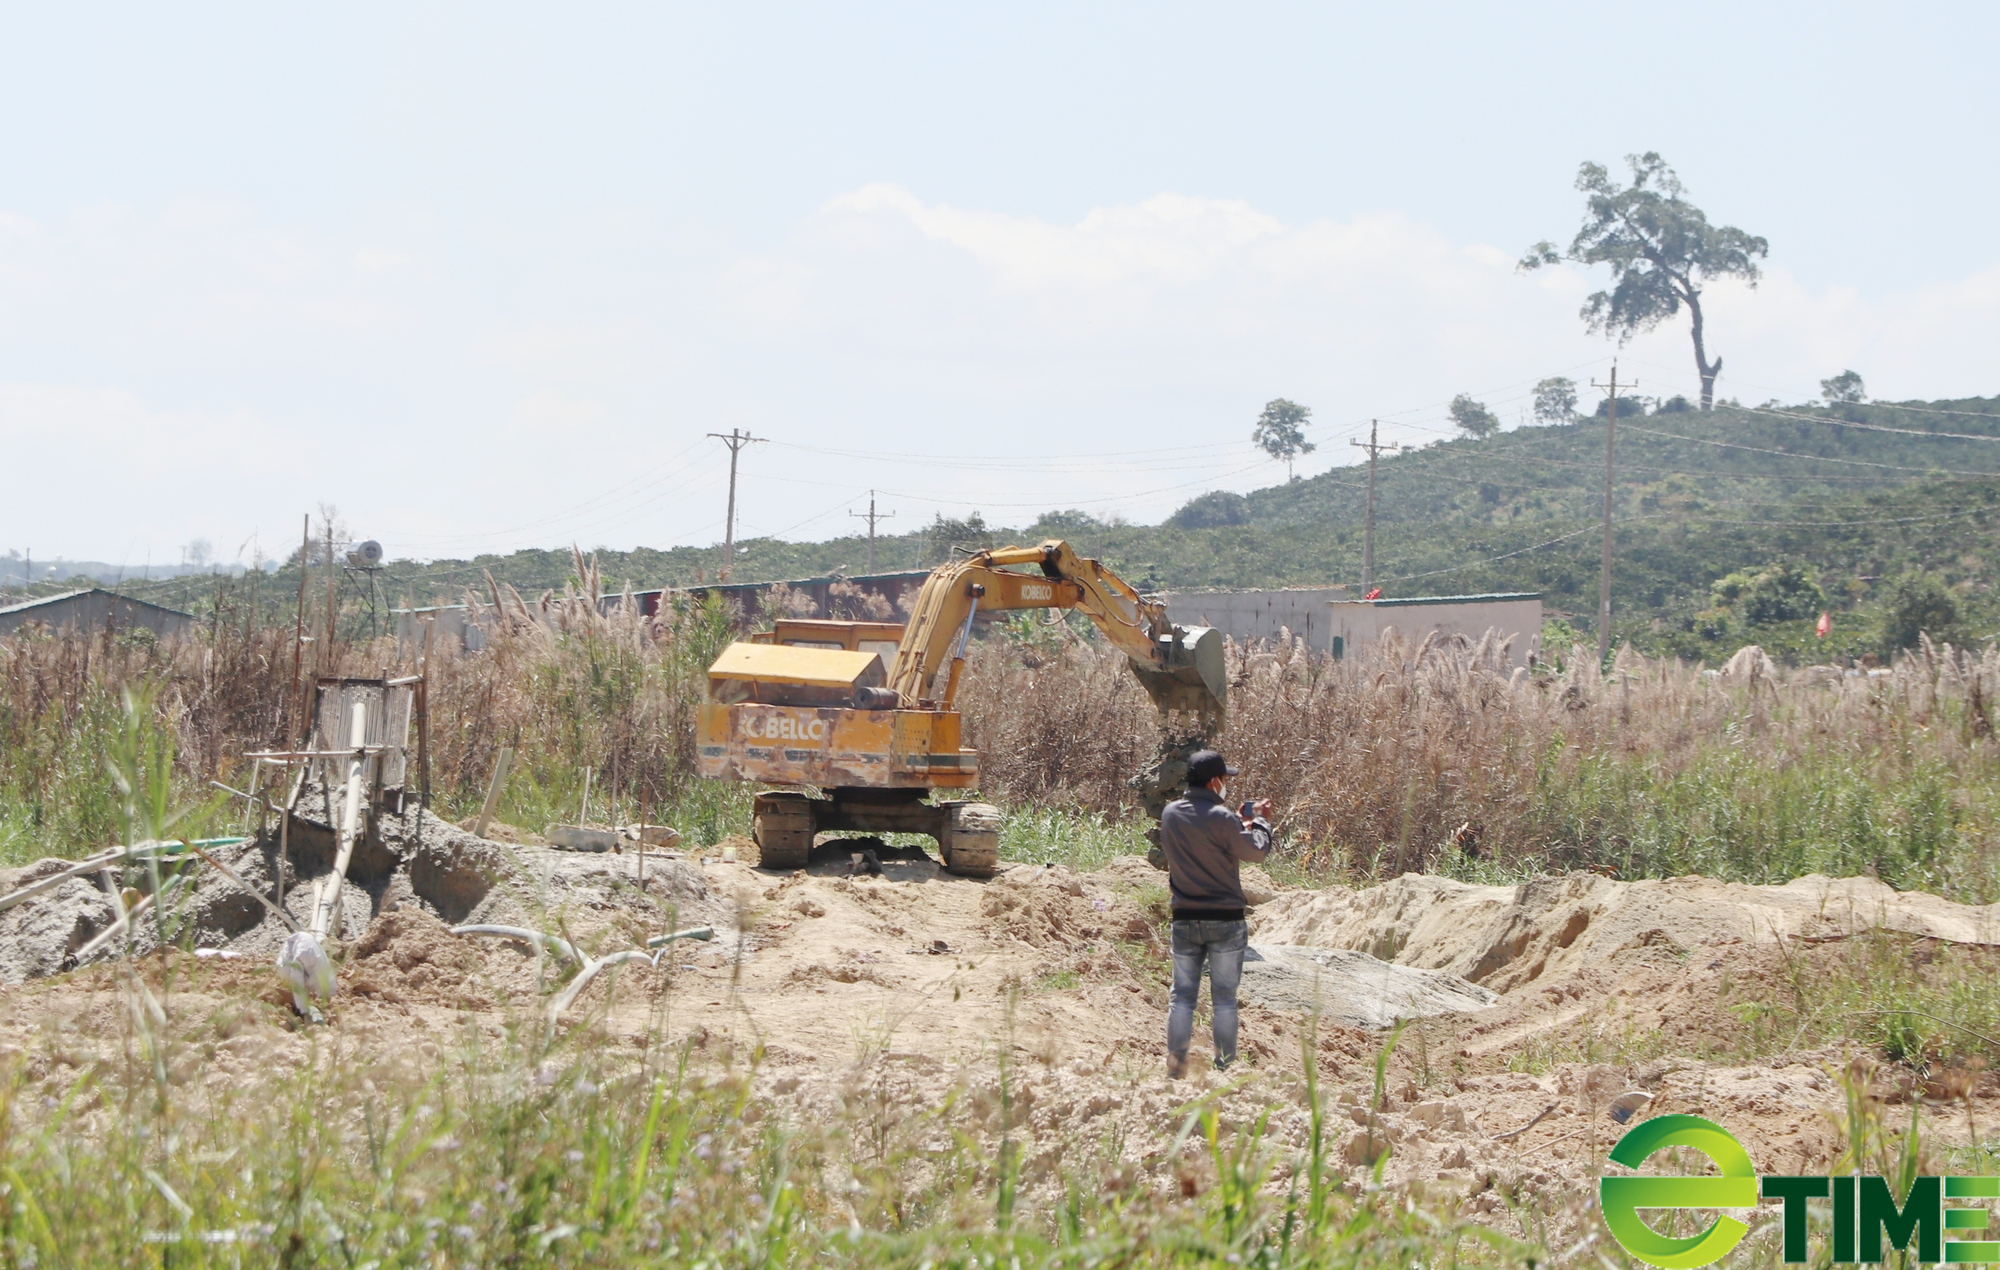 Lâm Đồng: Chiếm đất khi khai thác cát, không lập chứng từ, 1 công ty bị phạt gần 400 triệu đồng